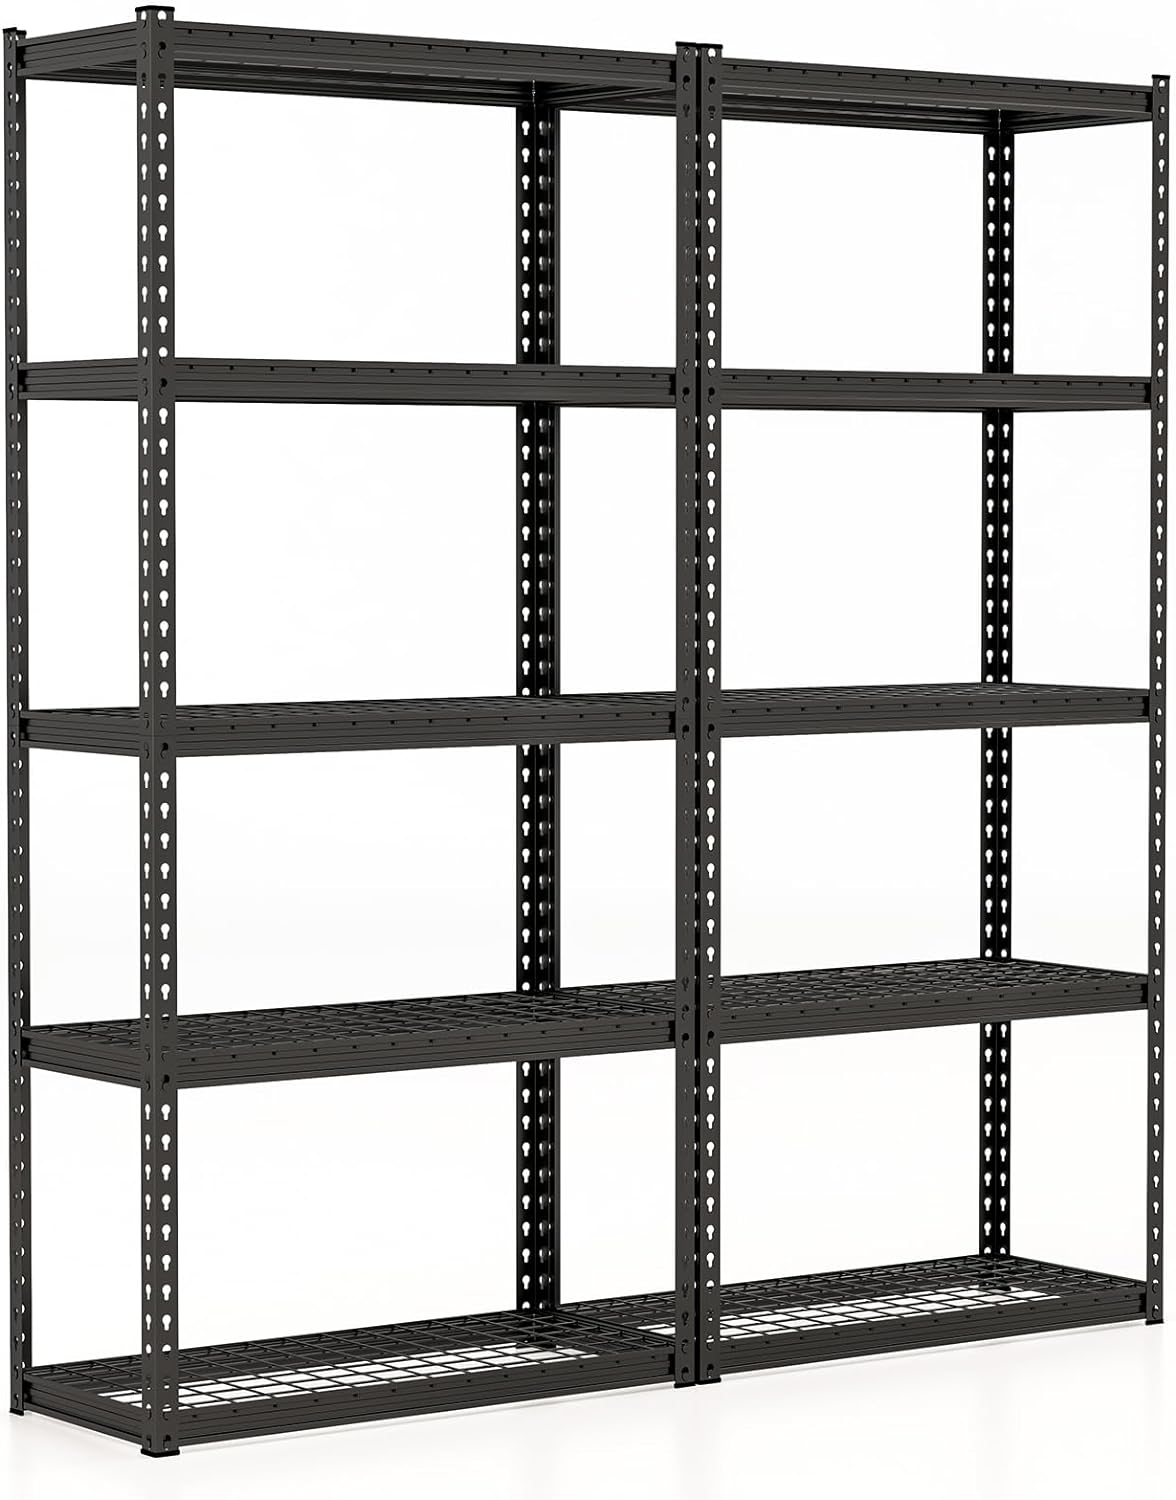 Giantex 5-Tier Storage Shelves, 35.5" x 15.5" x 72" Utility Rack Shelf